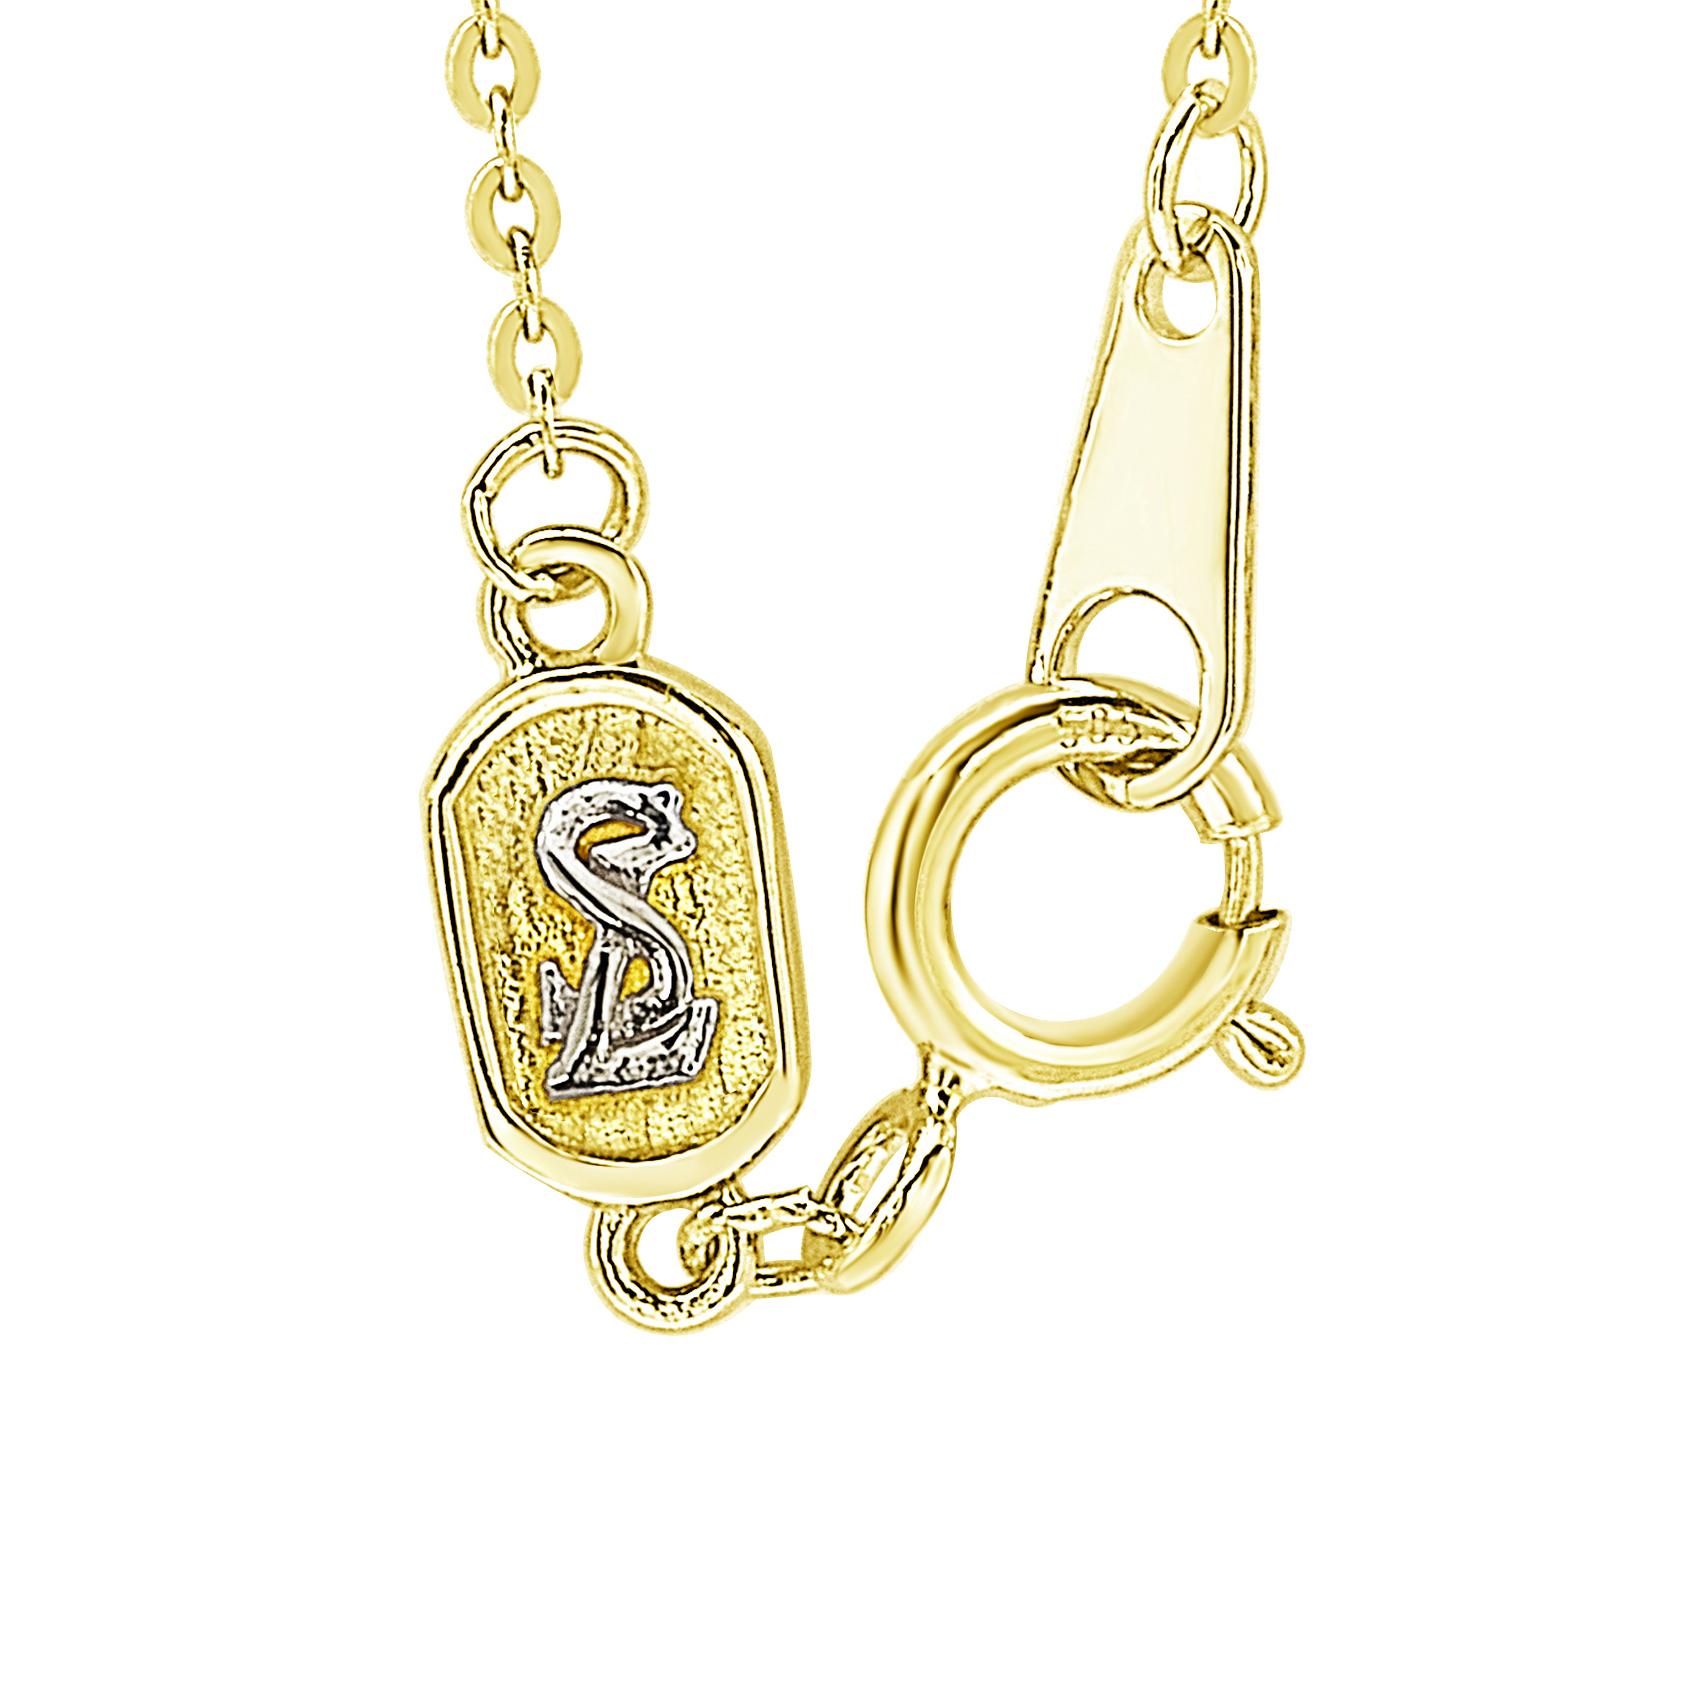 Diese elegante Halskette ist in 14 Karat Weiß-, Gelb- oder Roségold erhältlich. Die mit zwölf glitzernden Diamanten besetzte Kette sorgt für einen charmanten Look und ein Karabinerverschluss für sicheren Halt.

Weiße Diamanten
Diamanten: